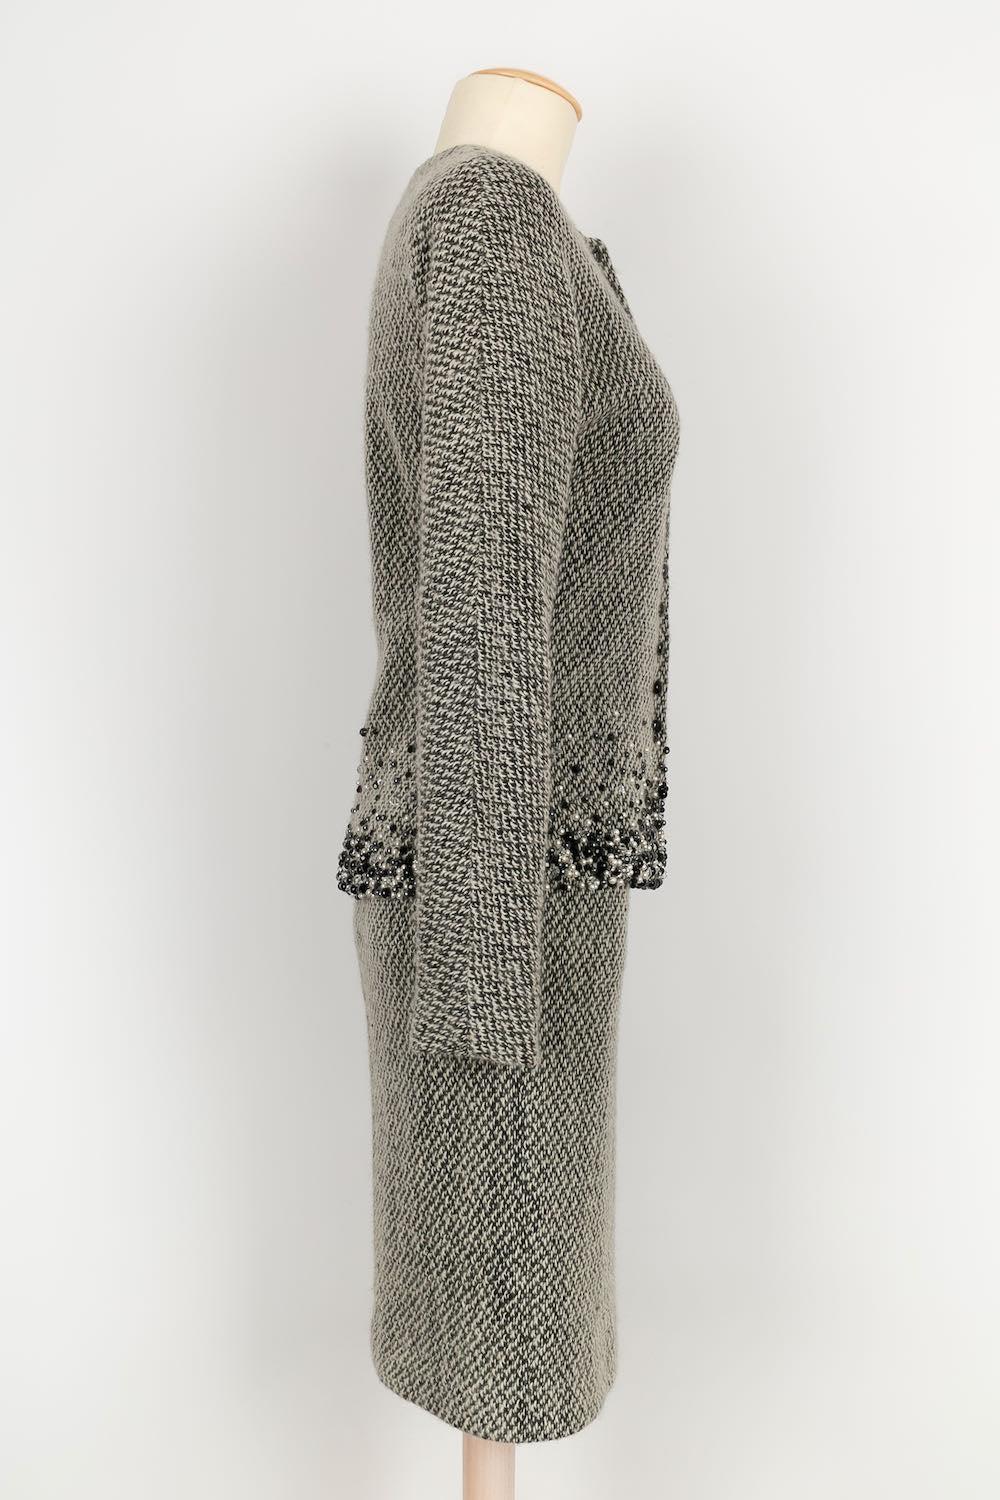 Dior -(Made in France) Anzug aus Wolle und Seide. Größe 36FR angegeben, entspricht einer 34FR/36FR.
Collection'S Winter 2001.

Zusätzliche Informationen: 

Abmessungen: 
Jacke: 
Schulterbreite: 44 cm, Brustumfang: 41 cm, Taillenumfang: 35 cm,